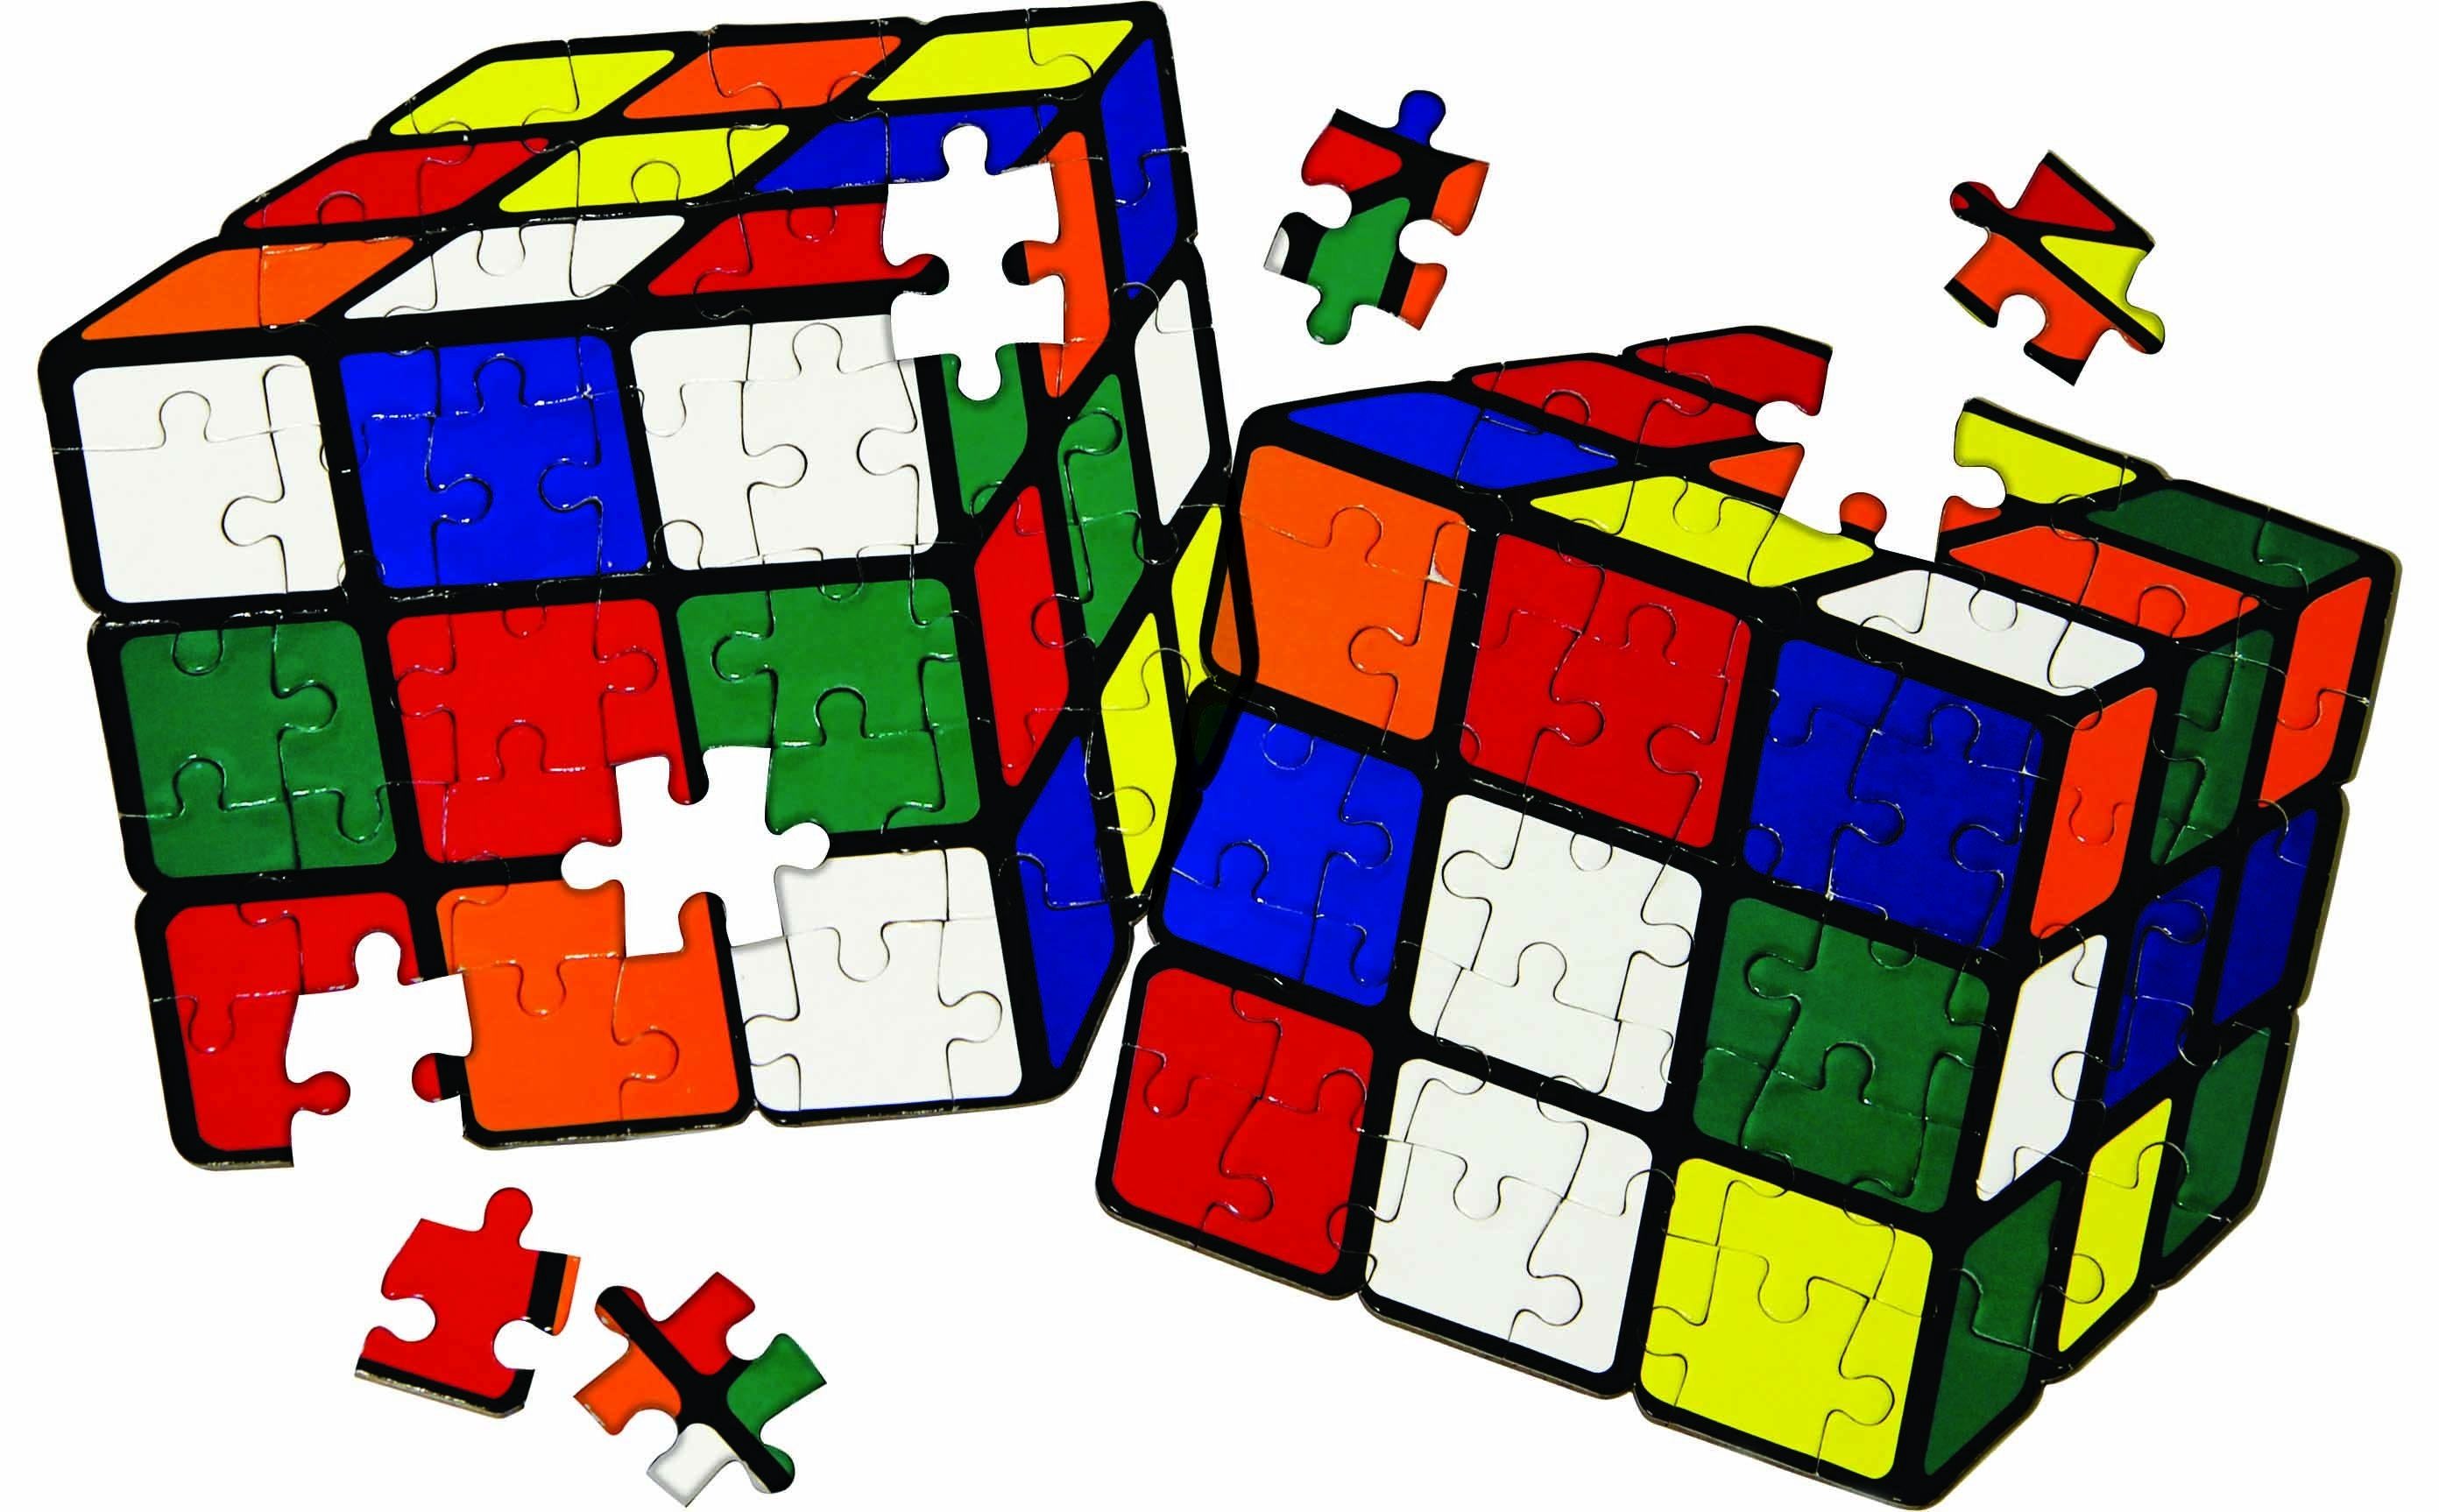 Игры головоломки много много много. Рубикс импосибл. Головоломка кубик Рубика. Пазл из кубиков. Кубик Рубика на белом фоне.